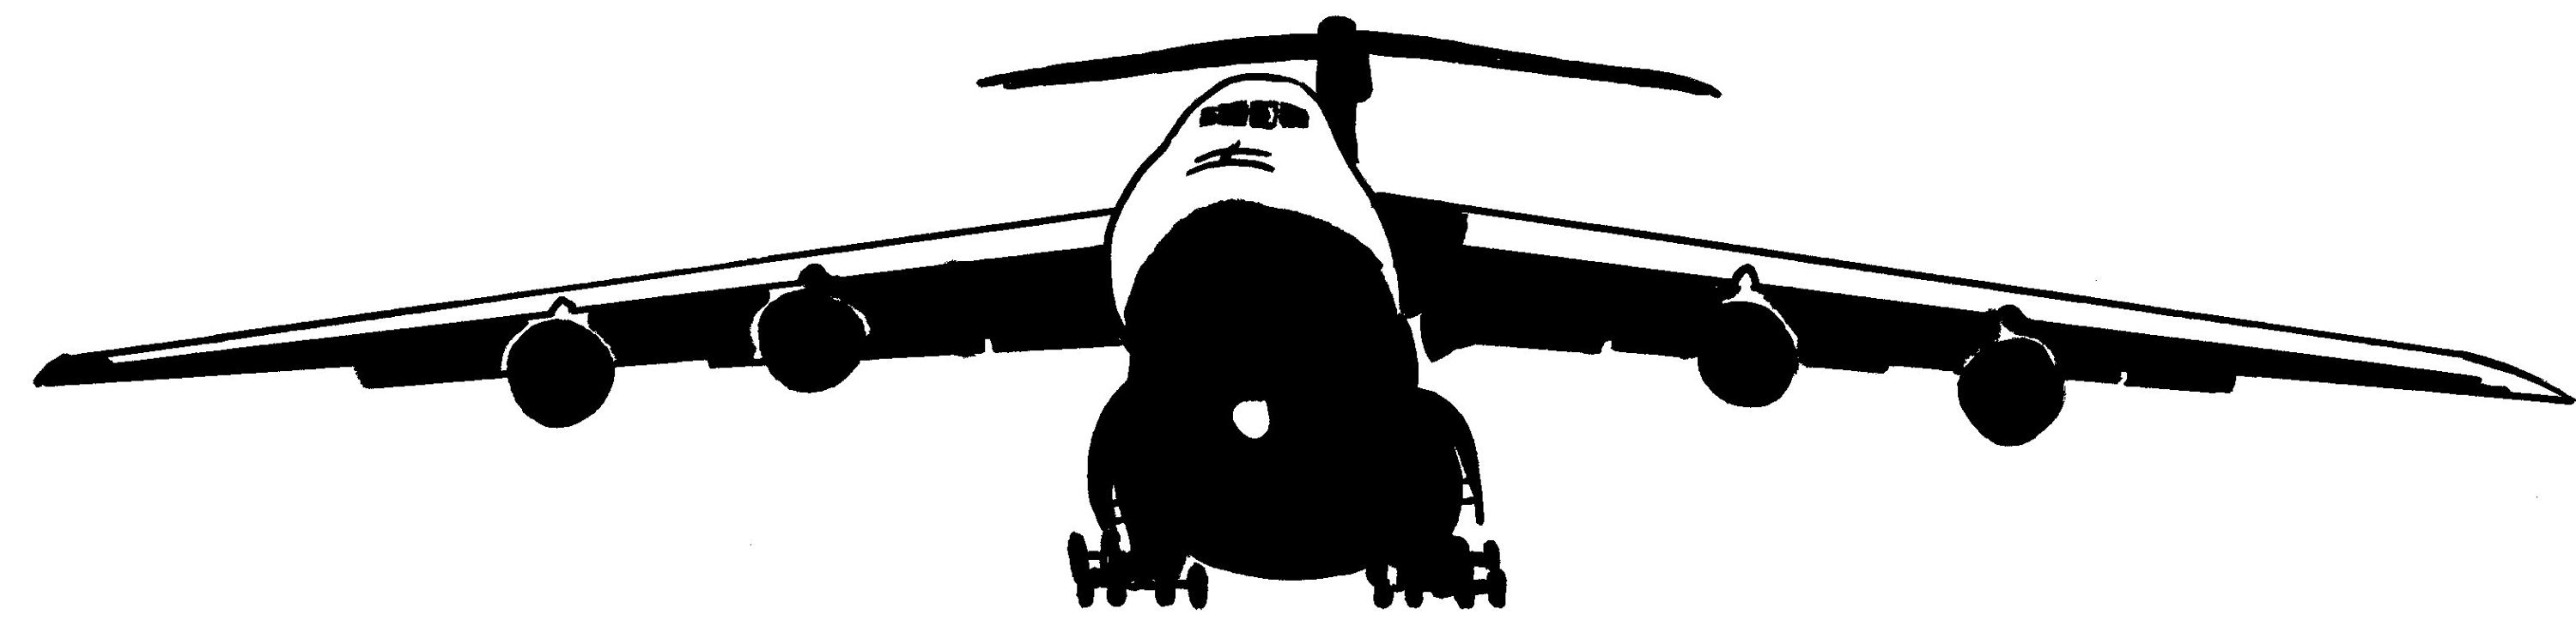 C-130 Silhouette Clipart - ClipArt Best - ClipArt Best.